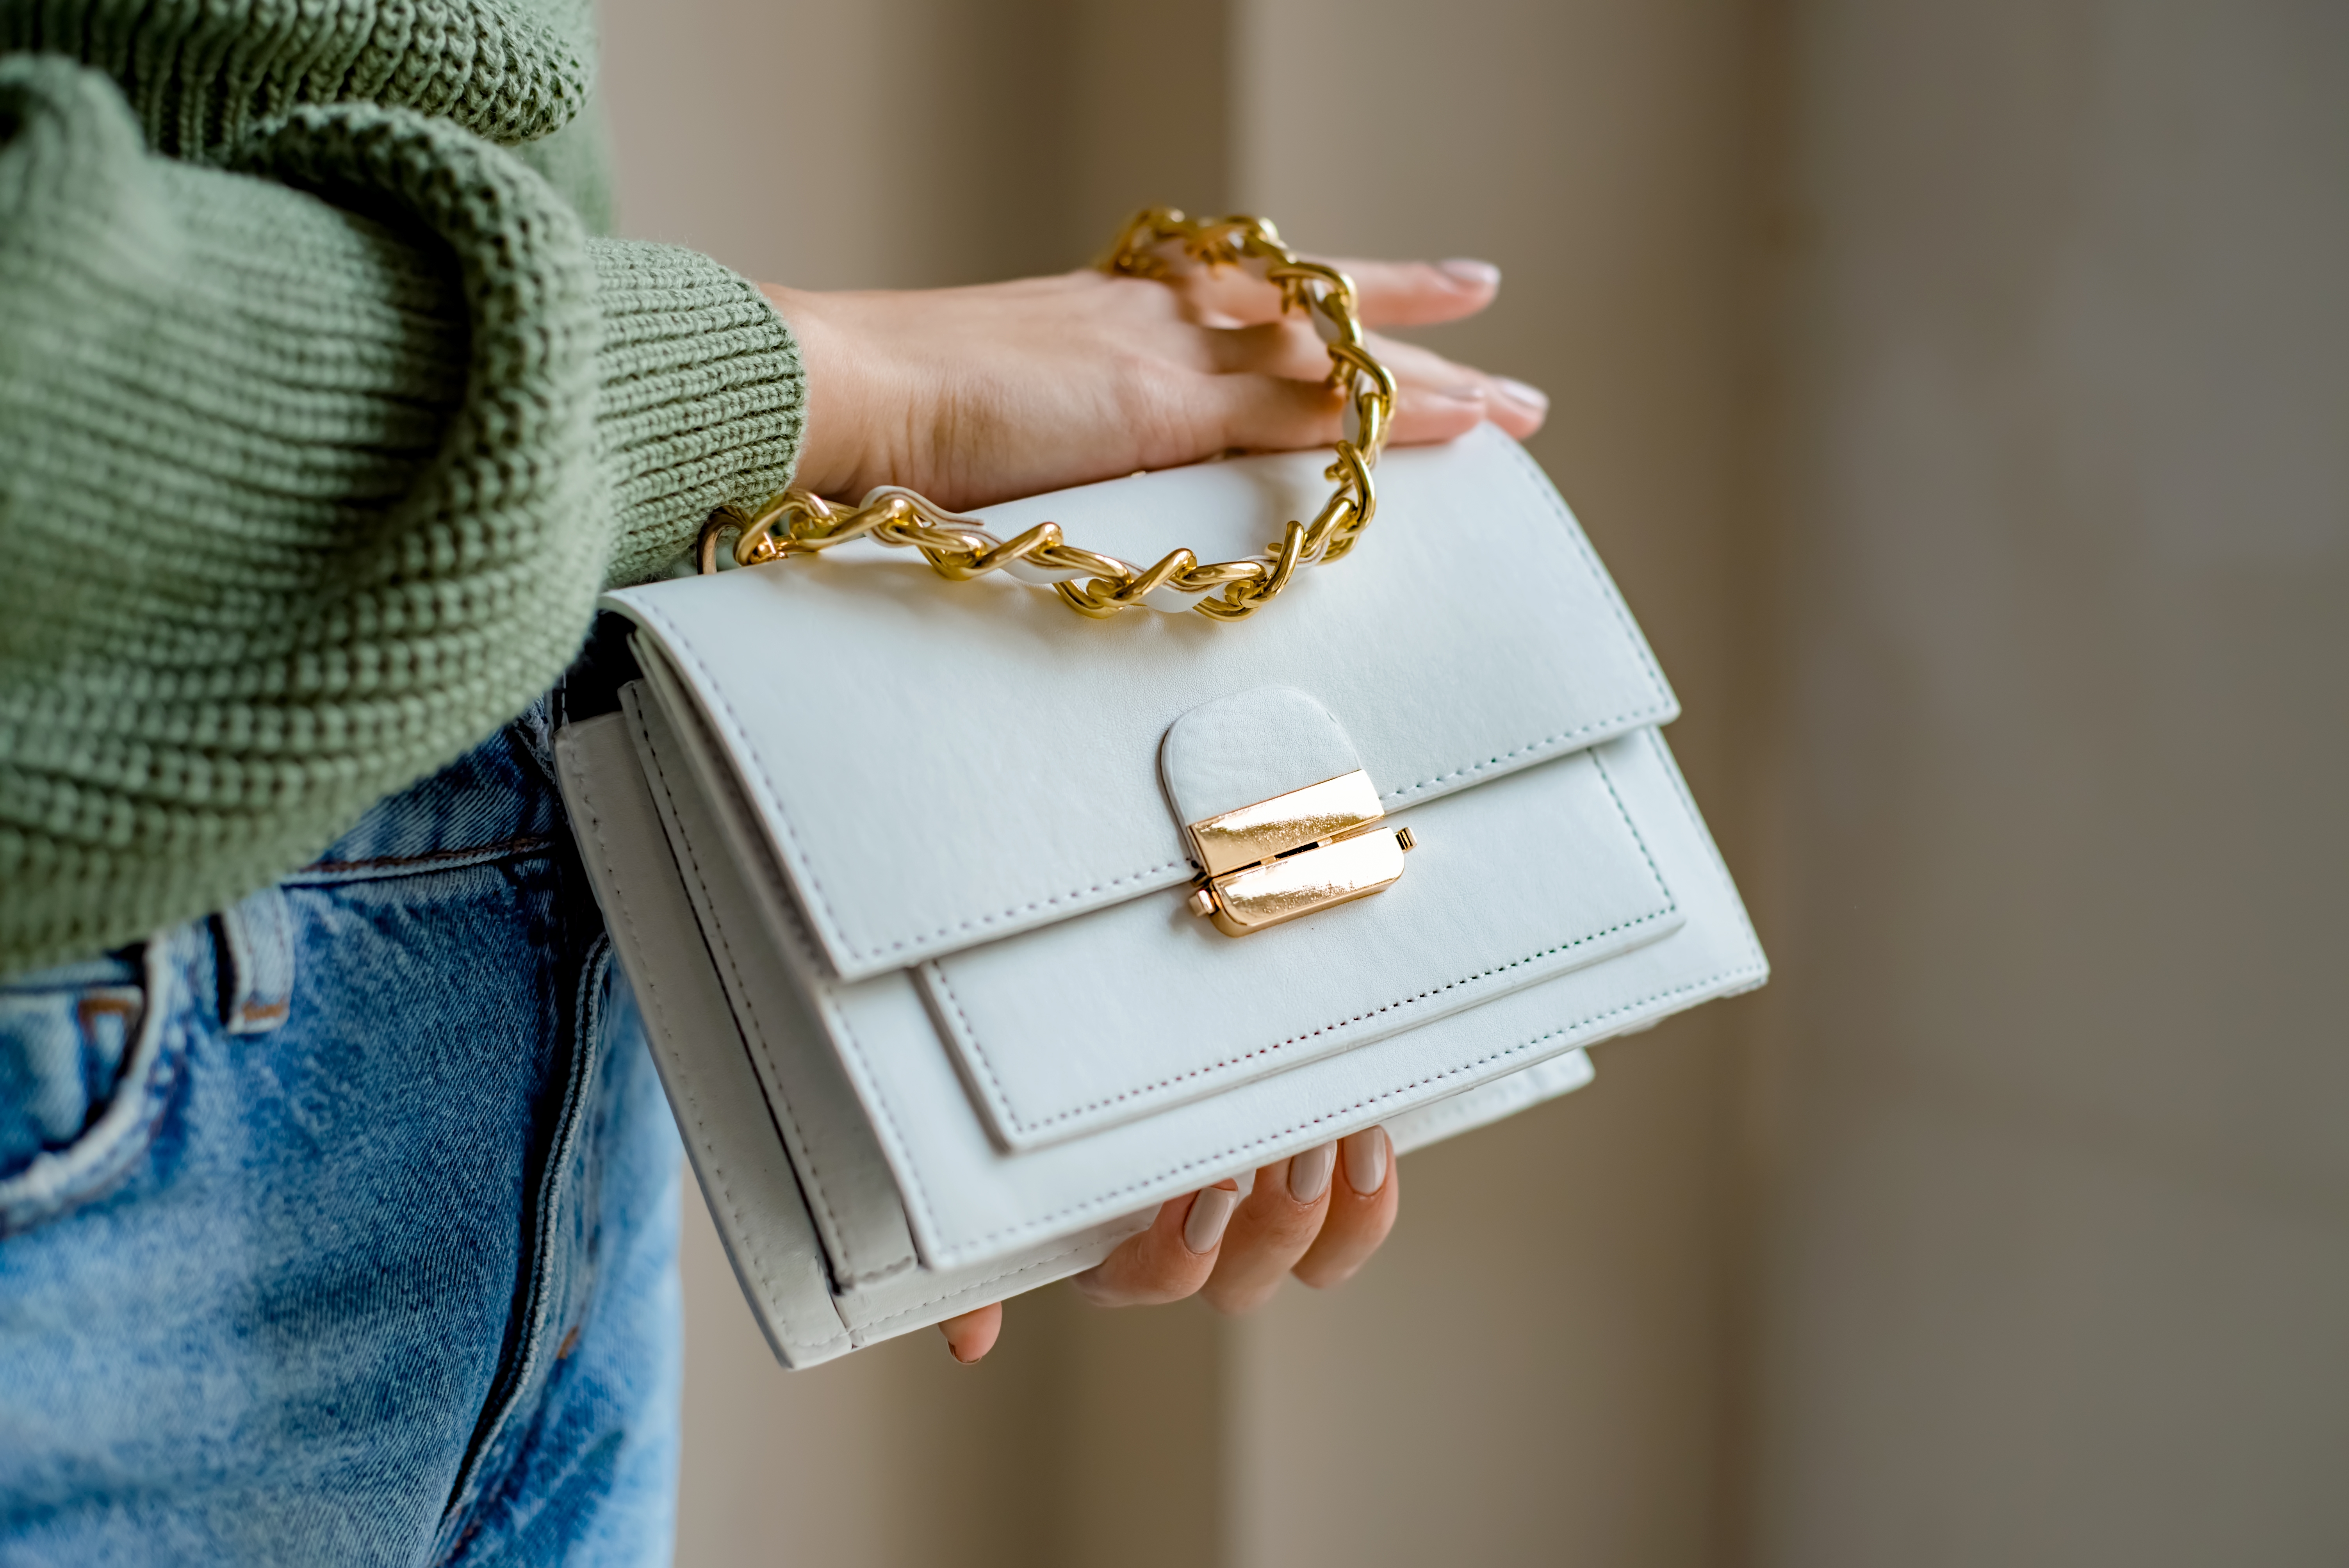 Eine Frau mit einer weißen Handtasche | Quelle: Shutterstock